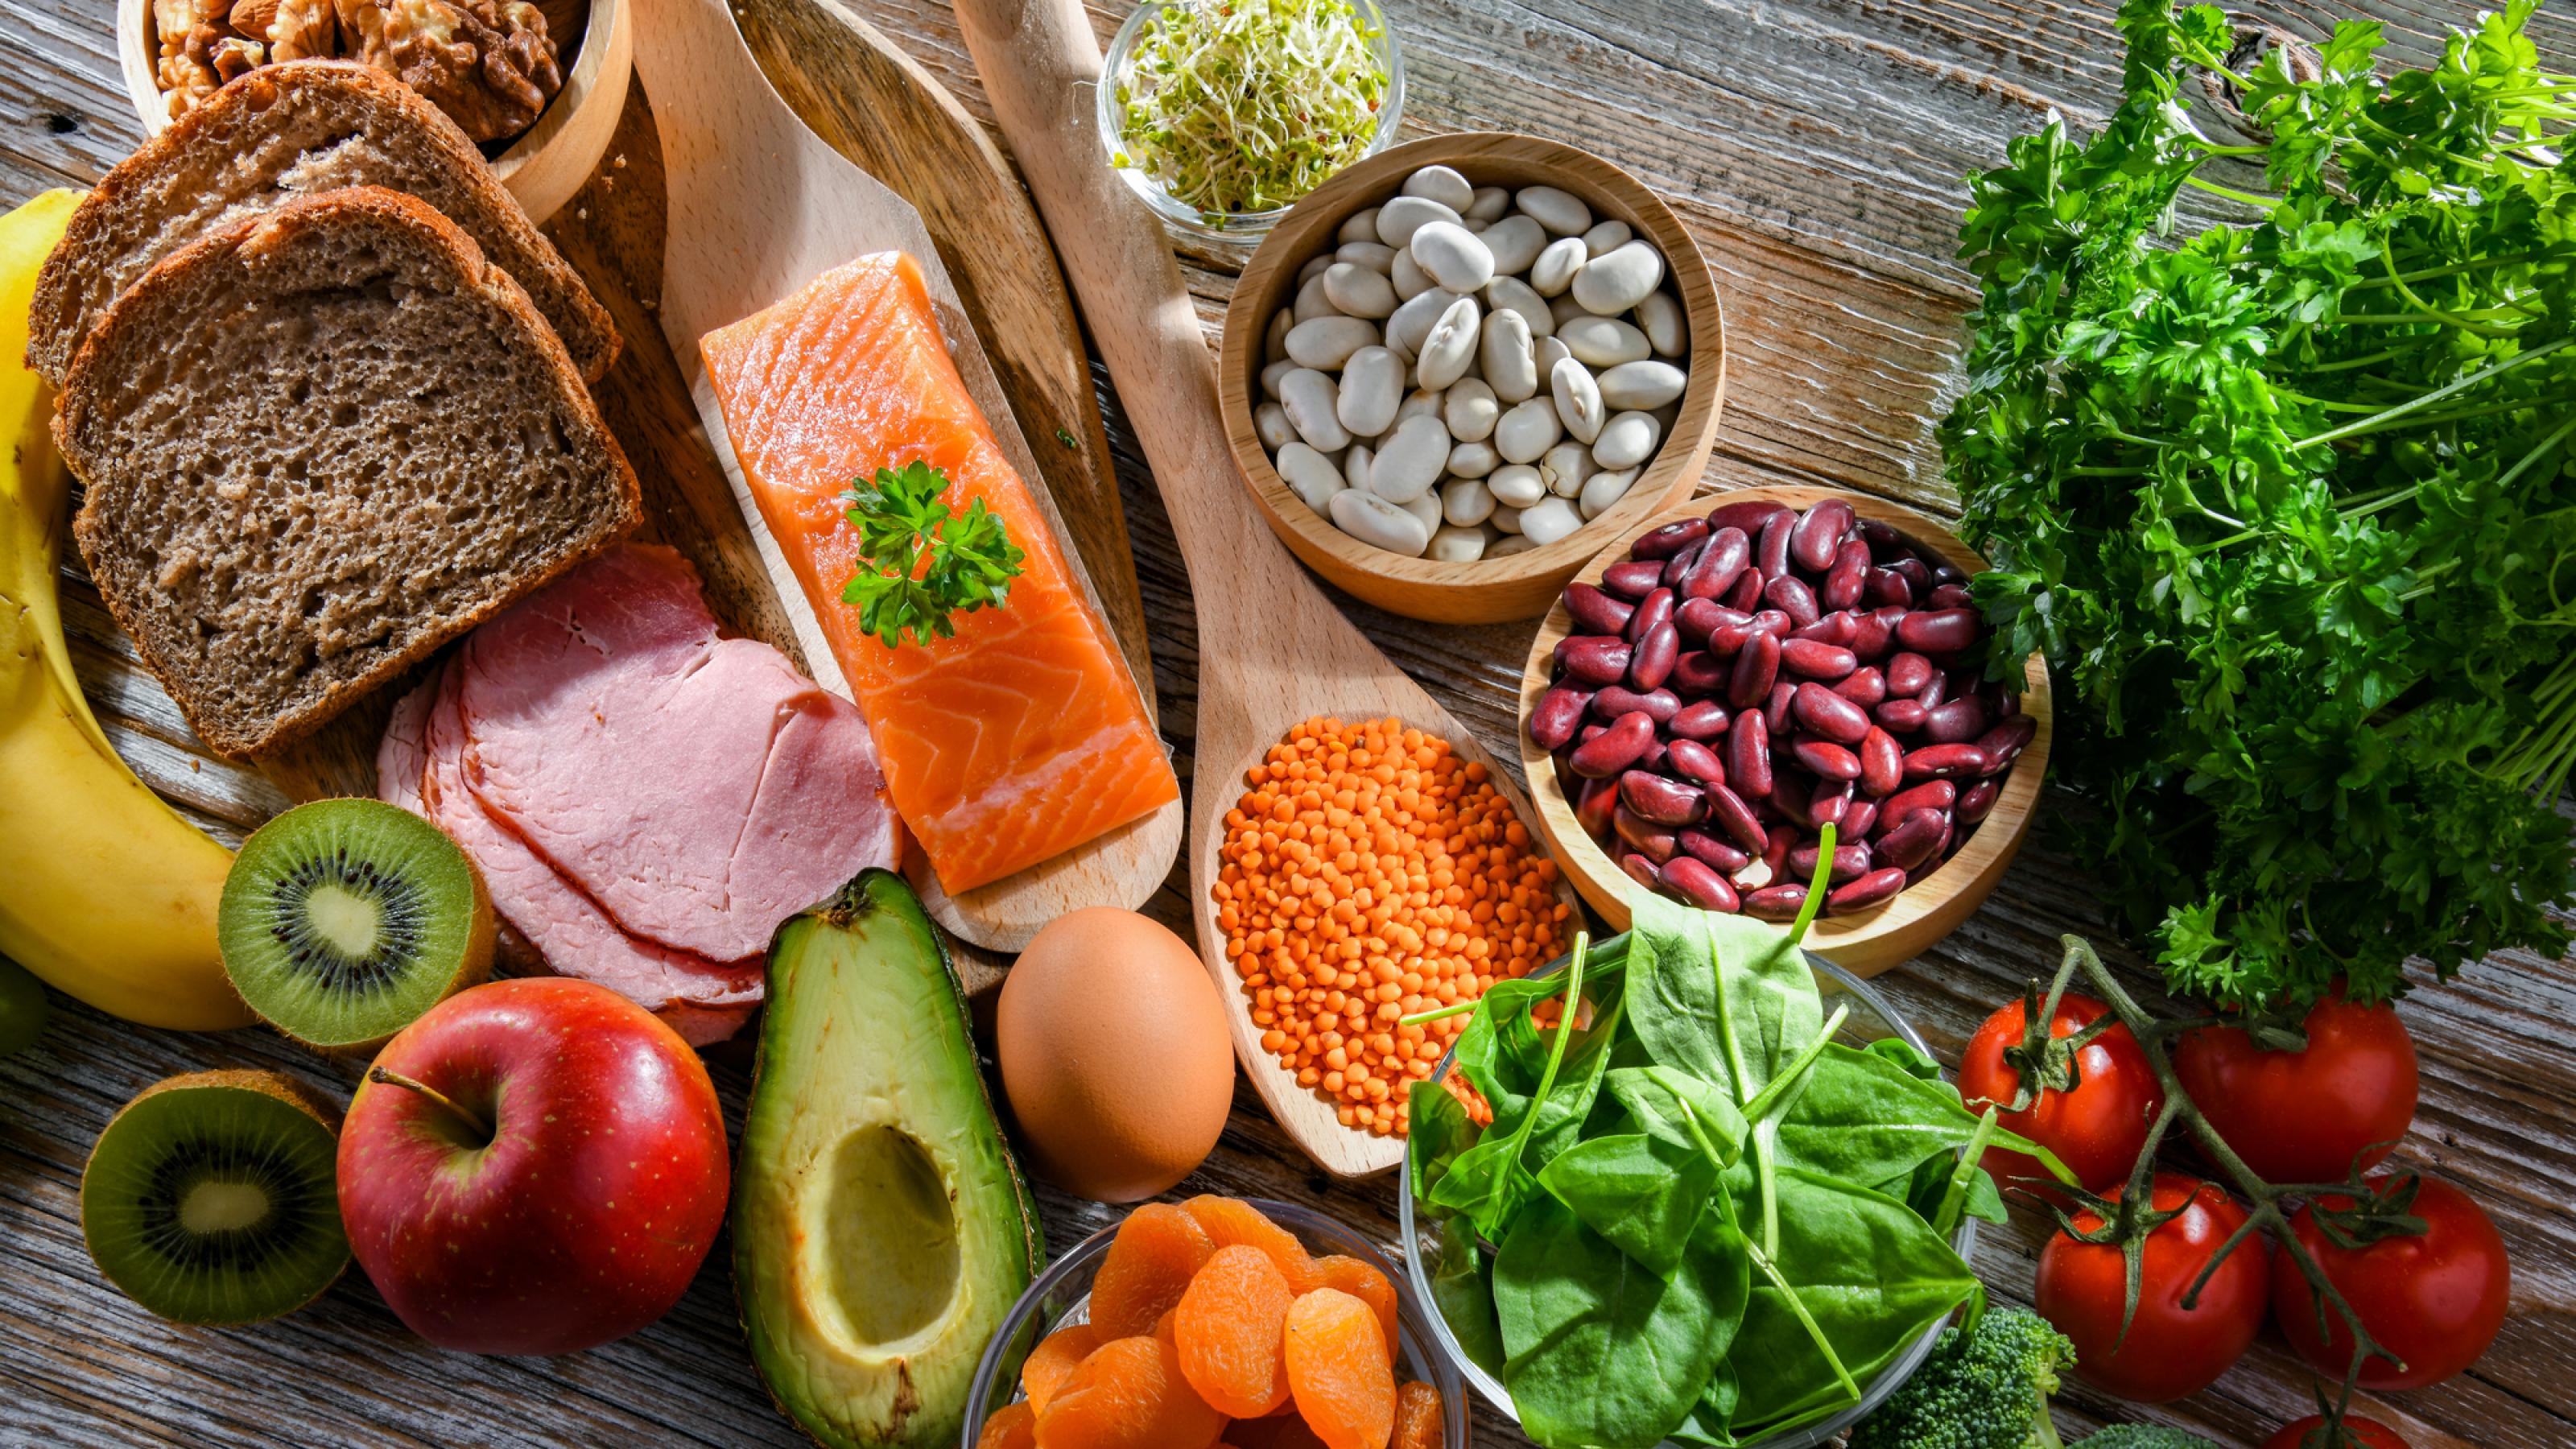 Draufsicht: Ein Überblick von gesunden Lebensmitteln, die auf einer Tischplatte liegen. Avocado, Vollkornbrot, Kräuter, Spinat, Tomaten, Brokkoli, Apfel, Kiwi, Lachs, Ei, Nüsse und Hülsenfrüchte.